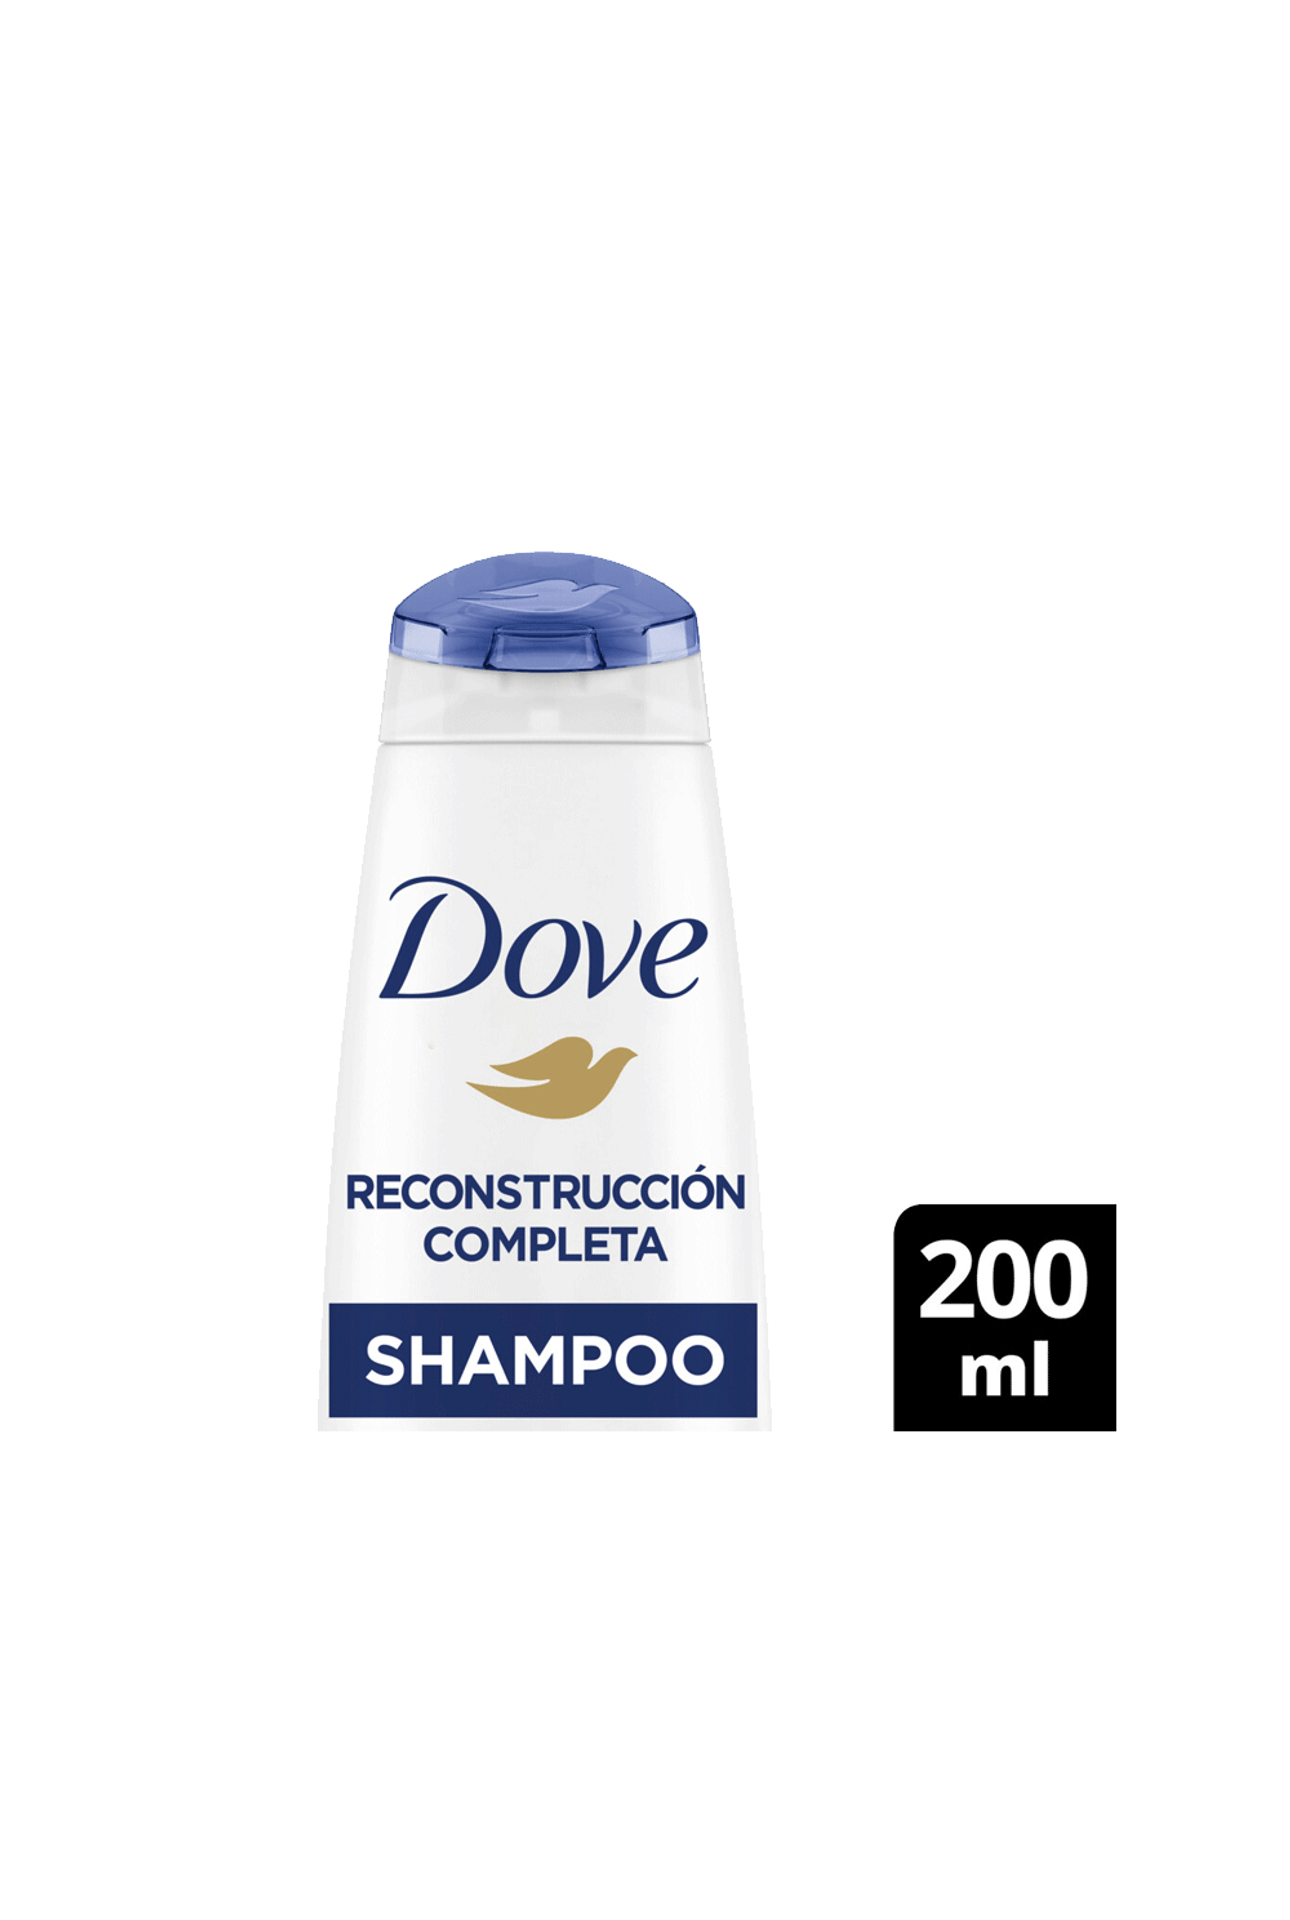 Dove-Shampoo-Dove-Reconstruccion-Completa-x-200ml-7791293046983_img1